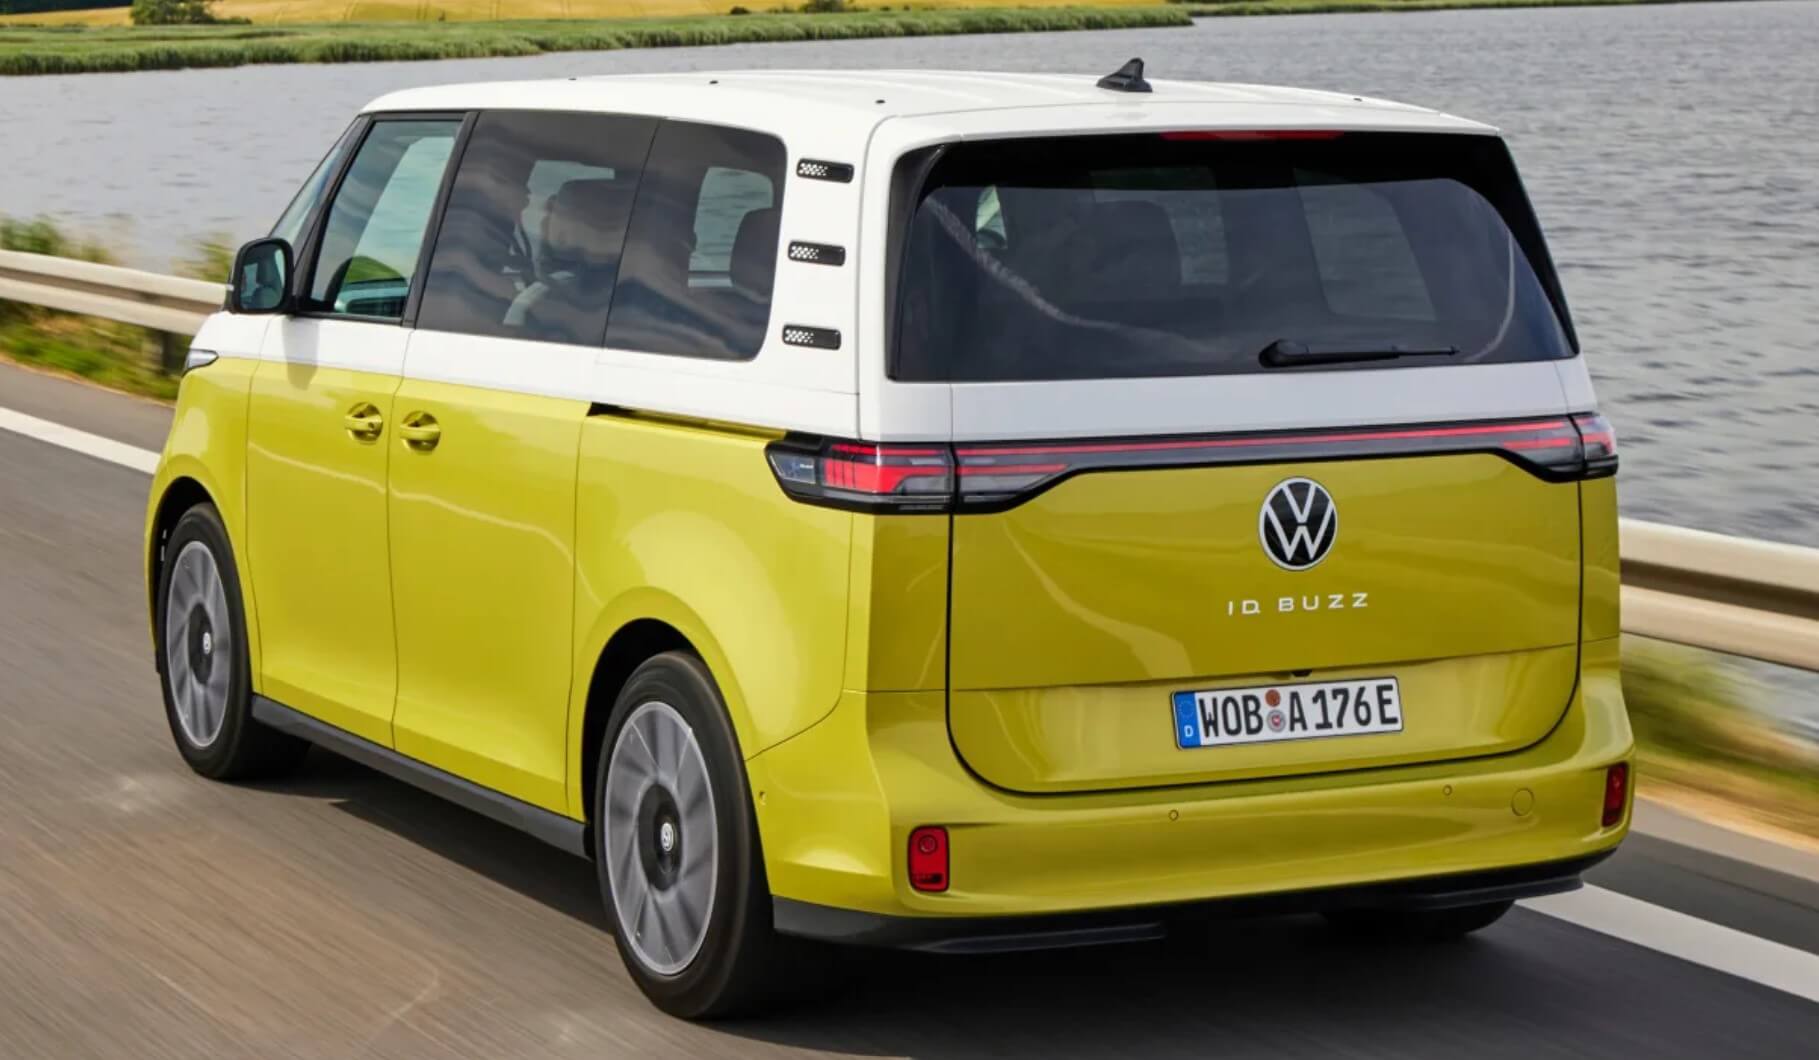 aria-label="Volkswagen ID Buzz yellow 9"